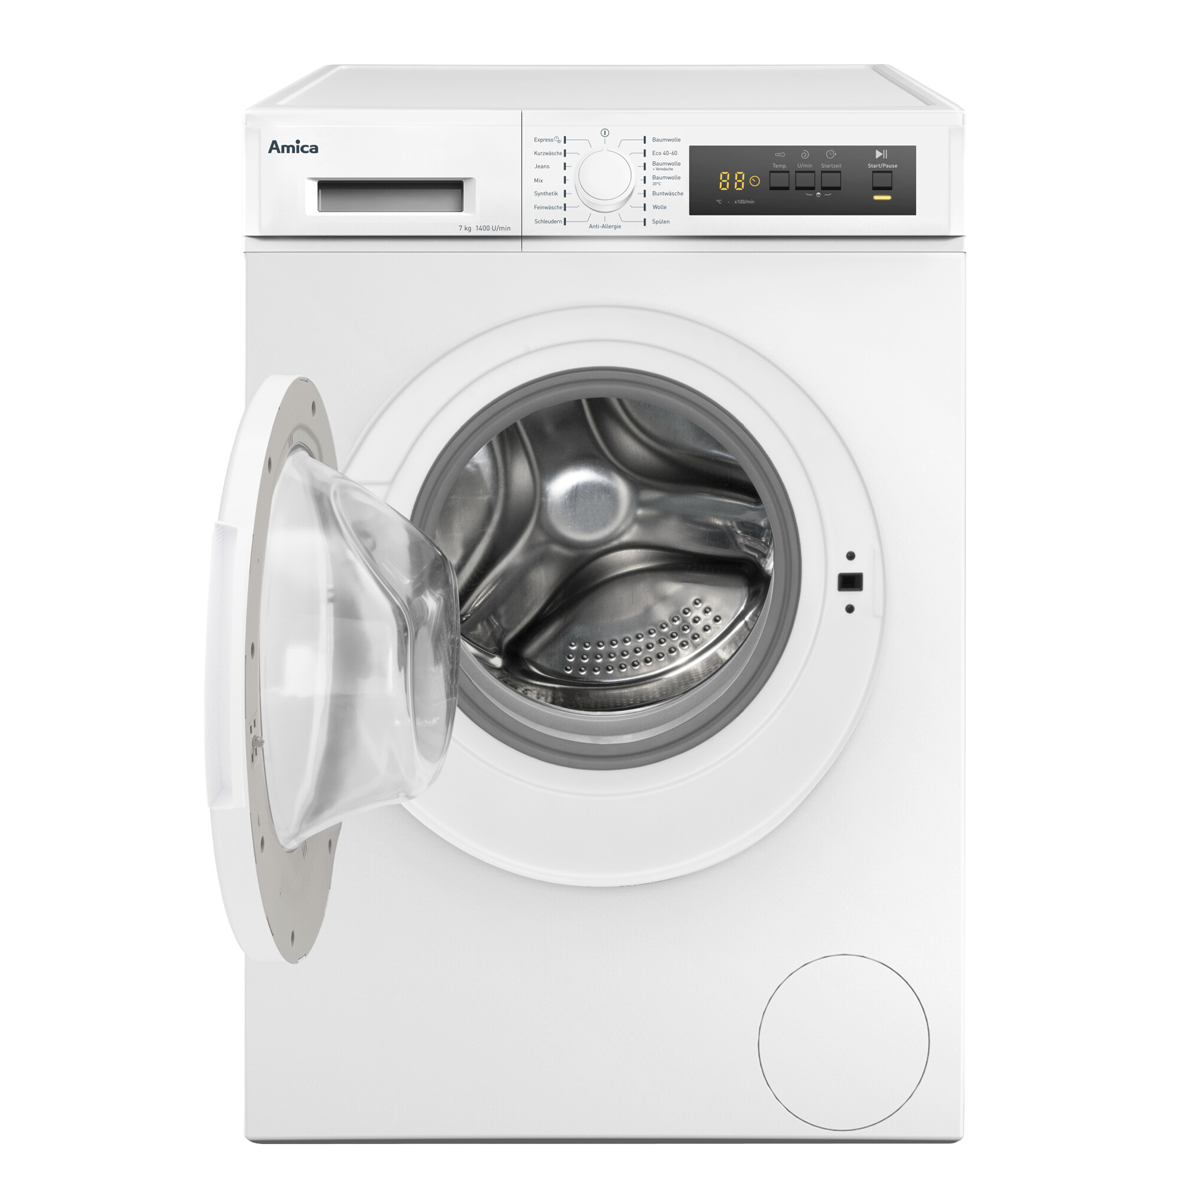 D) Stopp U/Min Aqua 1400 7kg Waschmaschine Waschmaschine AMICA Weiß Startzeitvorwahl Frontlader kg, (7